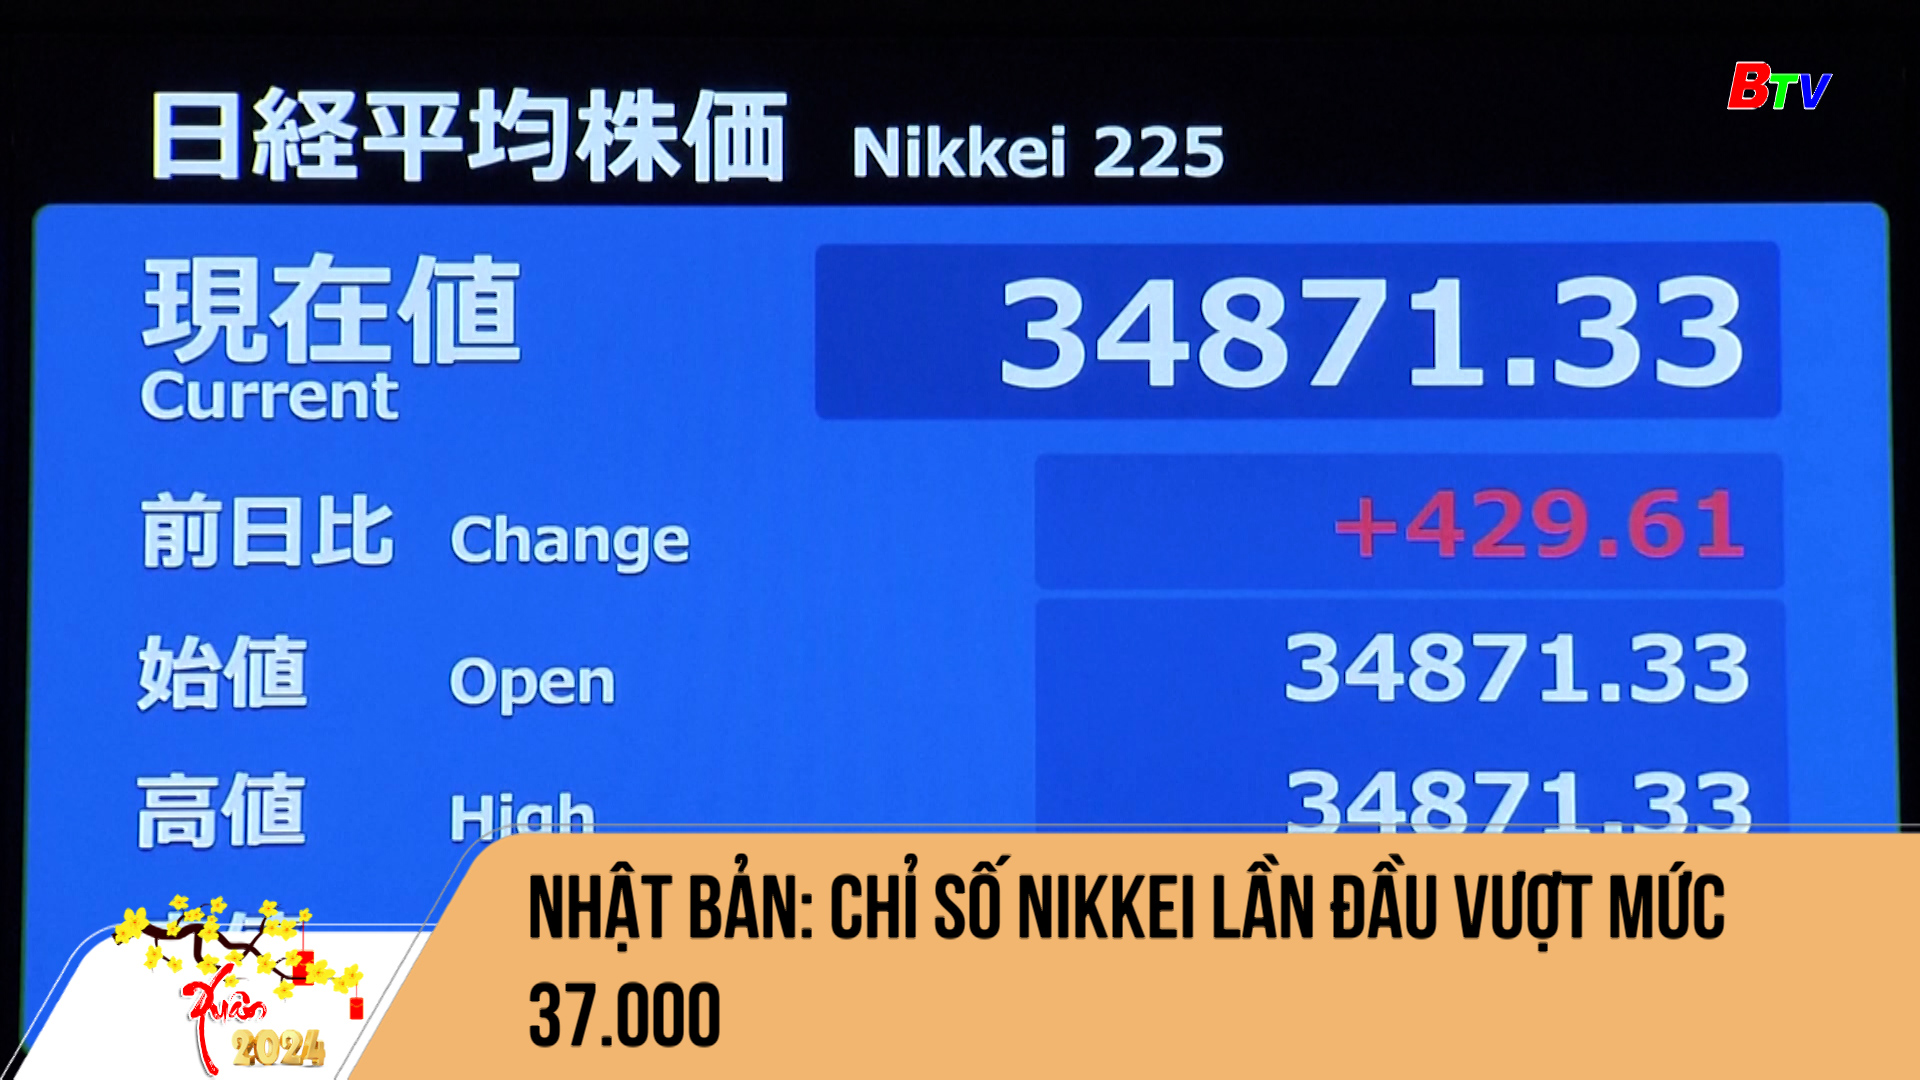 Nhật bản: chỉ số Nikkei lần đầu vượt mức 37.000